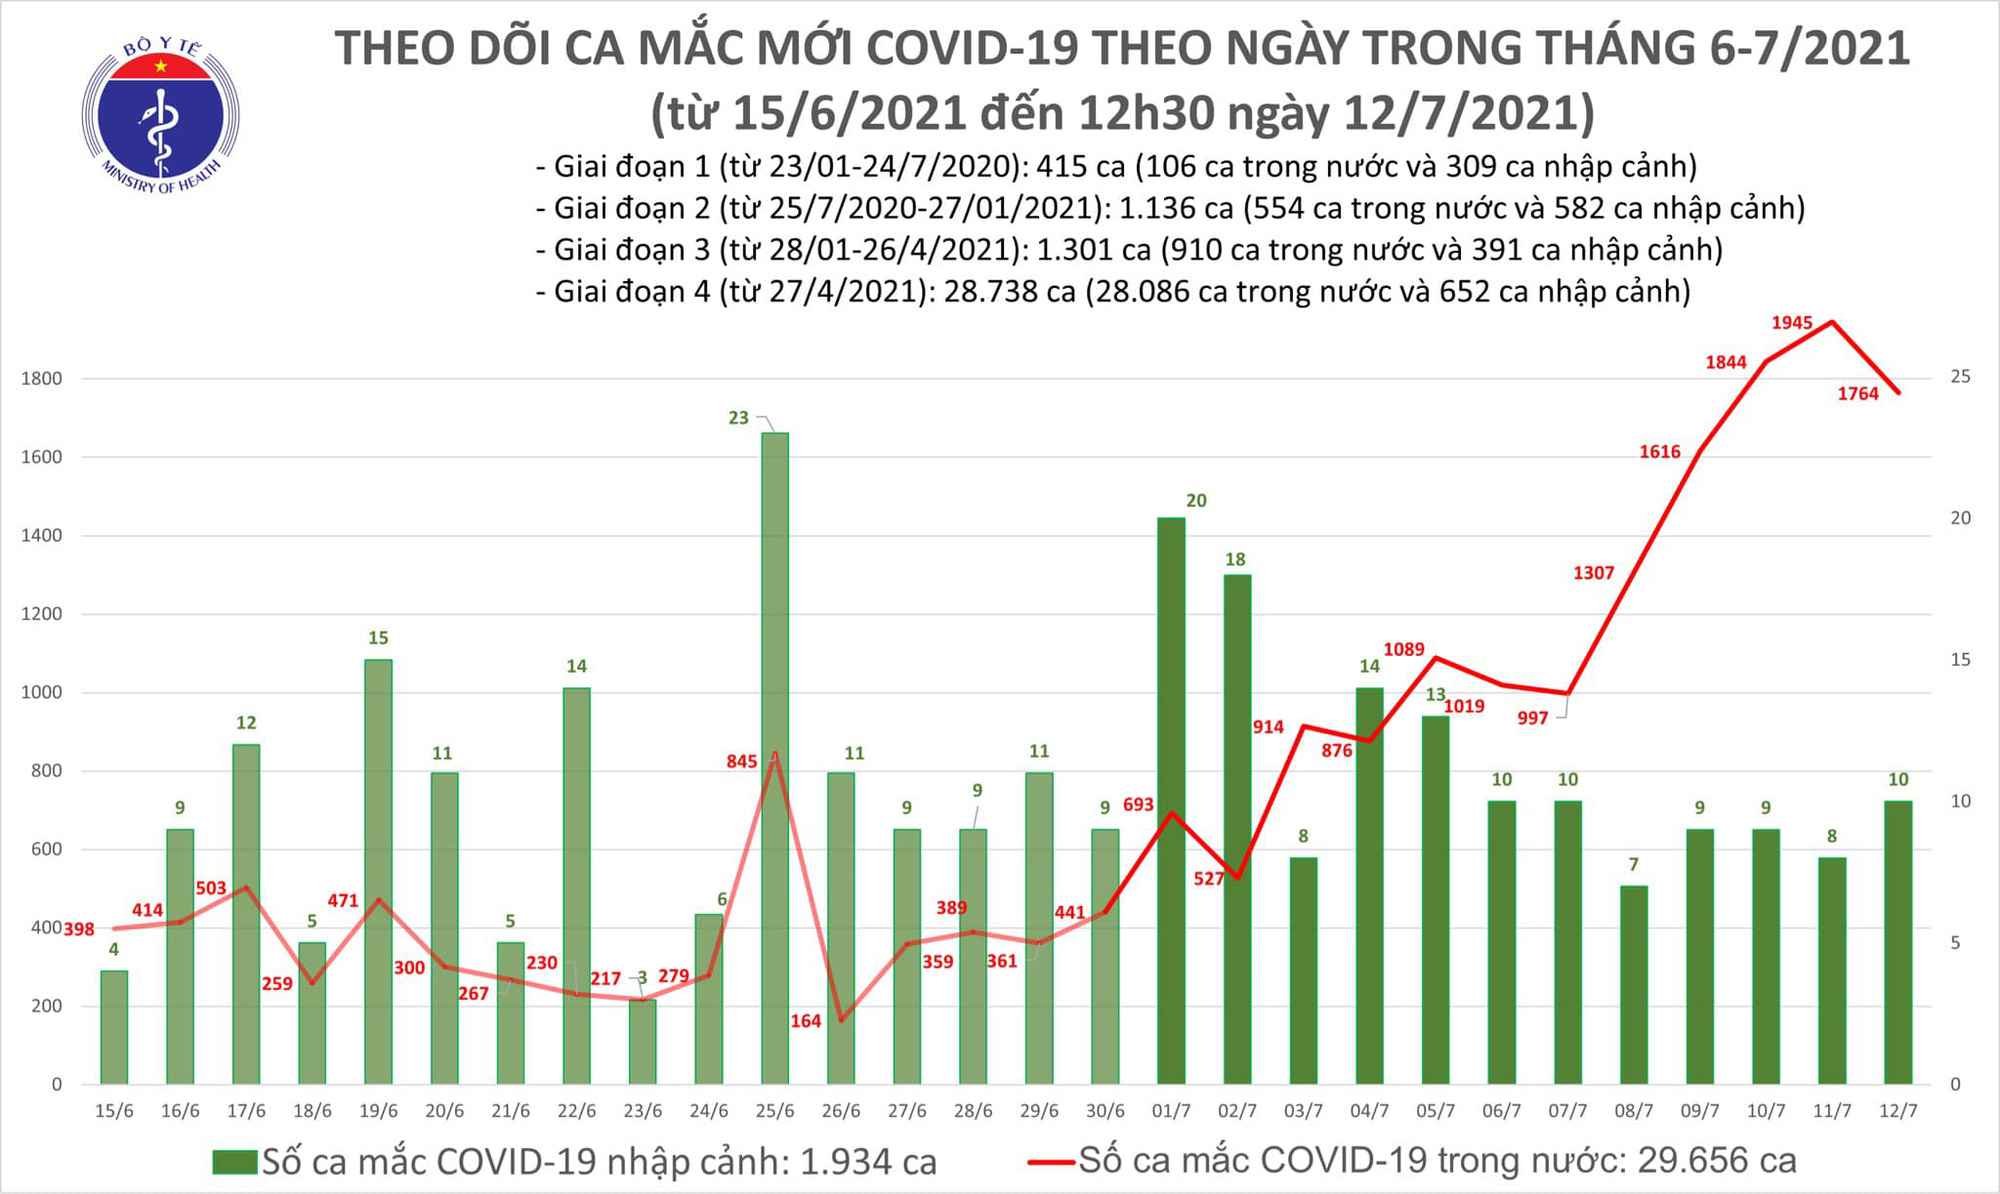 6 tiếng qua đã có thêm 1.112 ca Covid-19 mới, Hà Nội đột ngột có số mắc tăng cao - Ảnh 1.